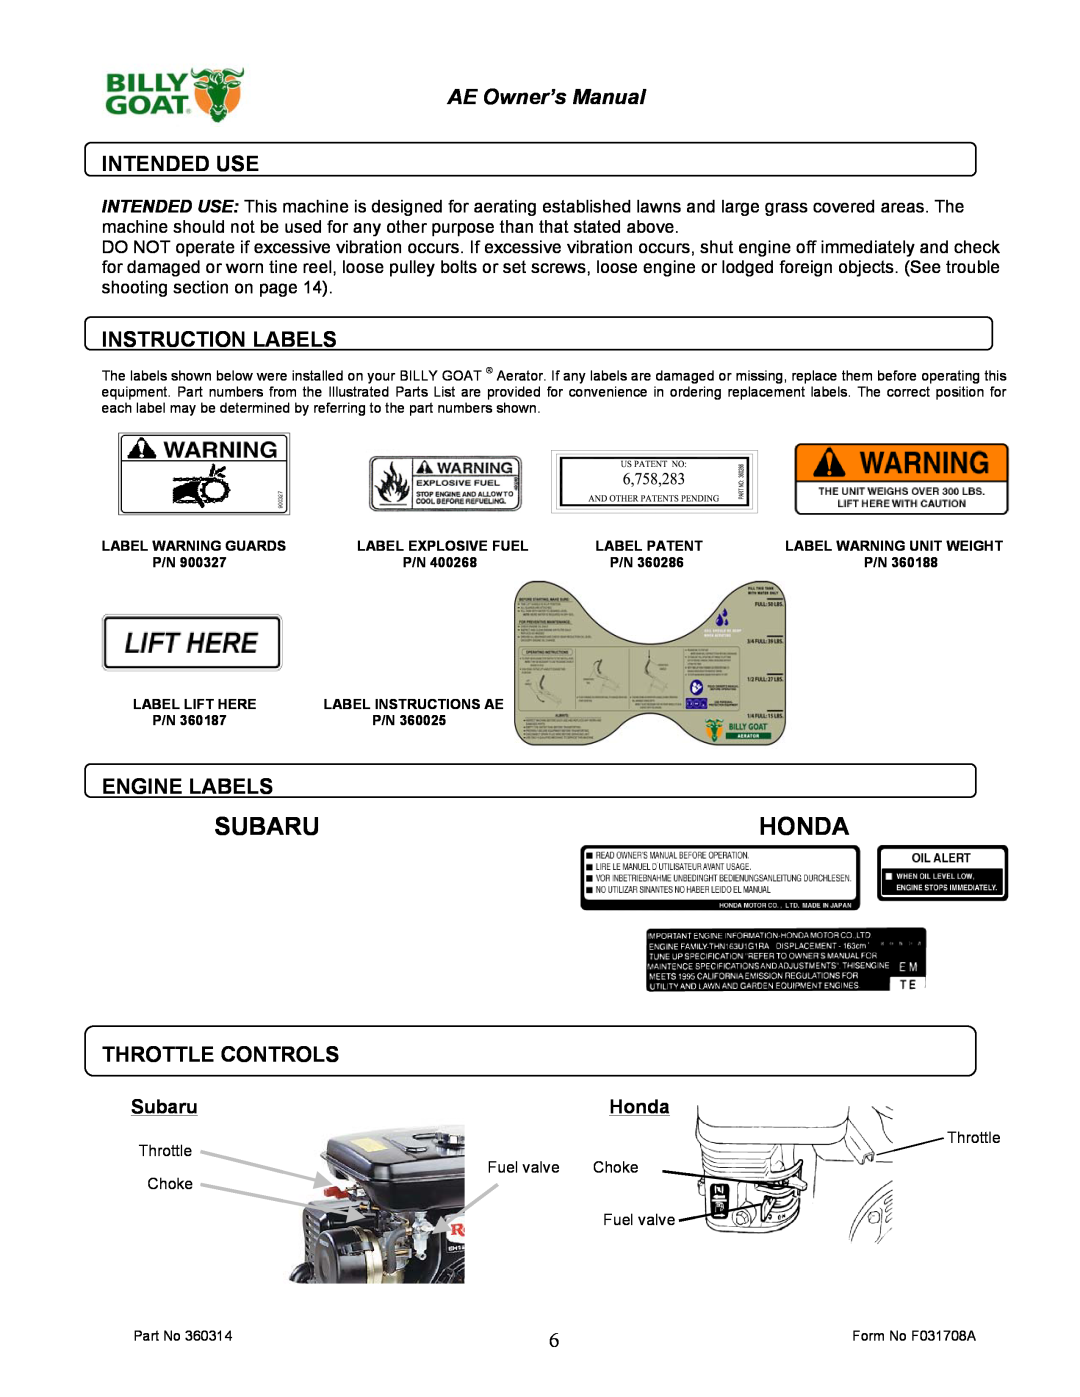 Billy Goat AE401HST Subaruhonda, Intended Use, Instruction Labels, Engine Labels, Throttle Controls, SubaruHonda 